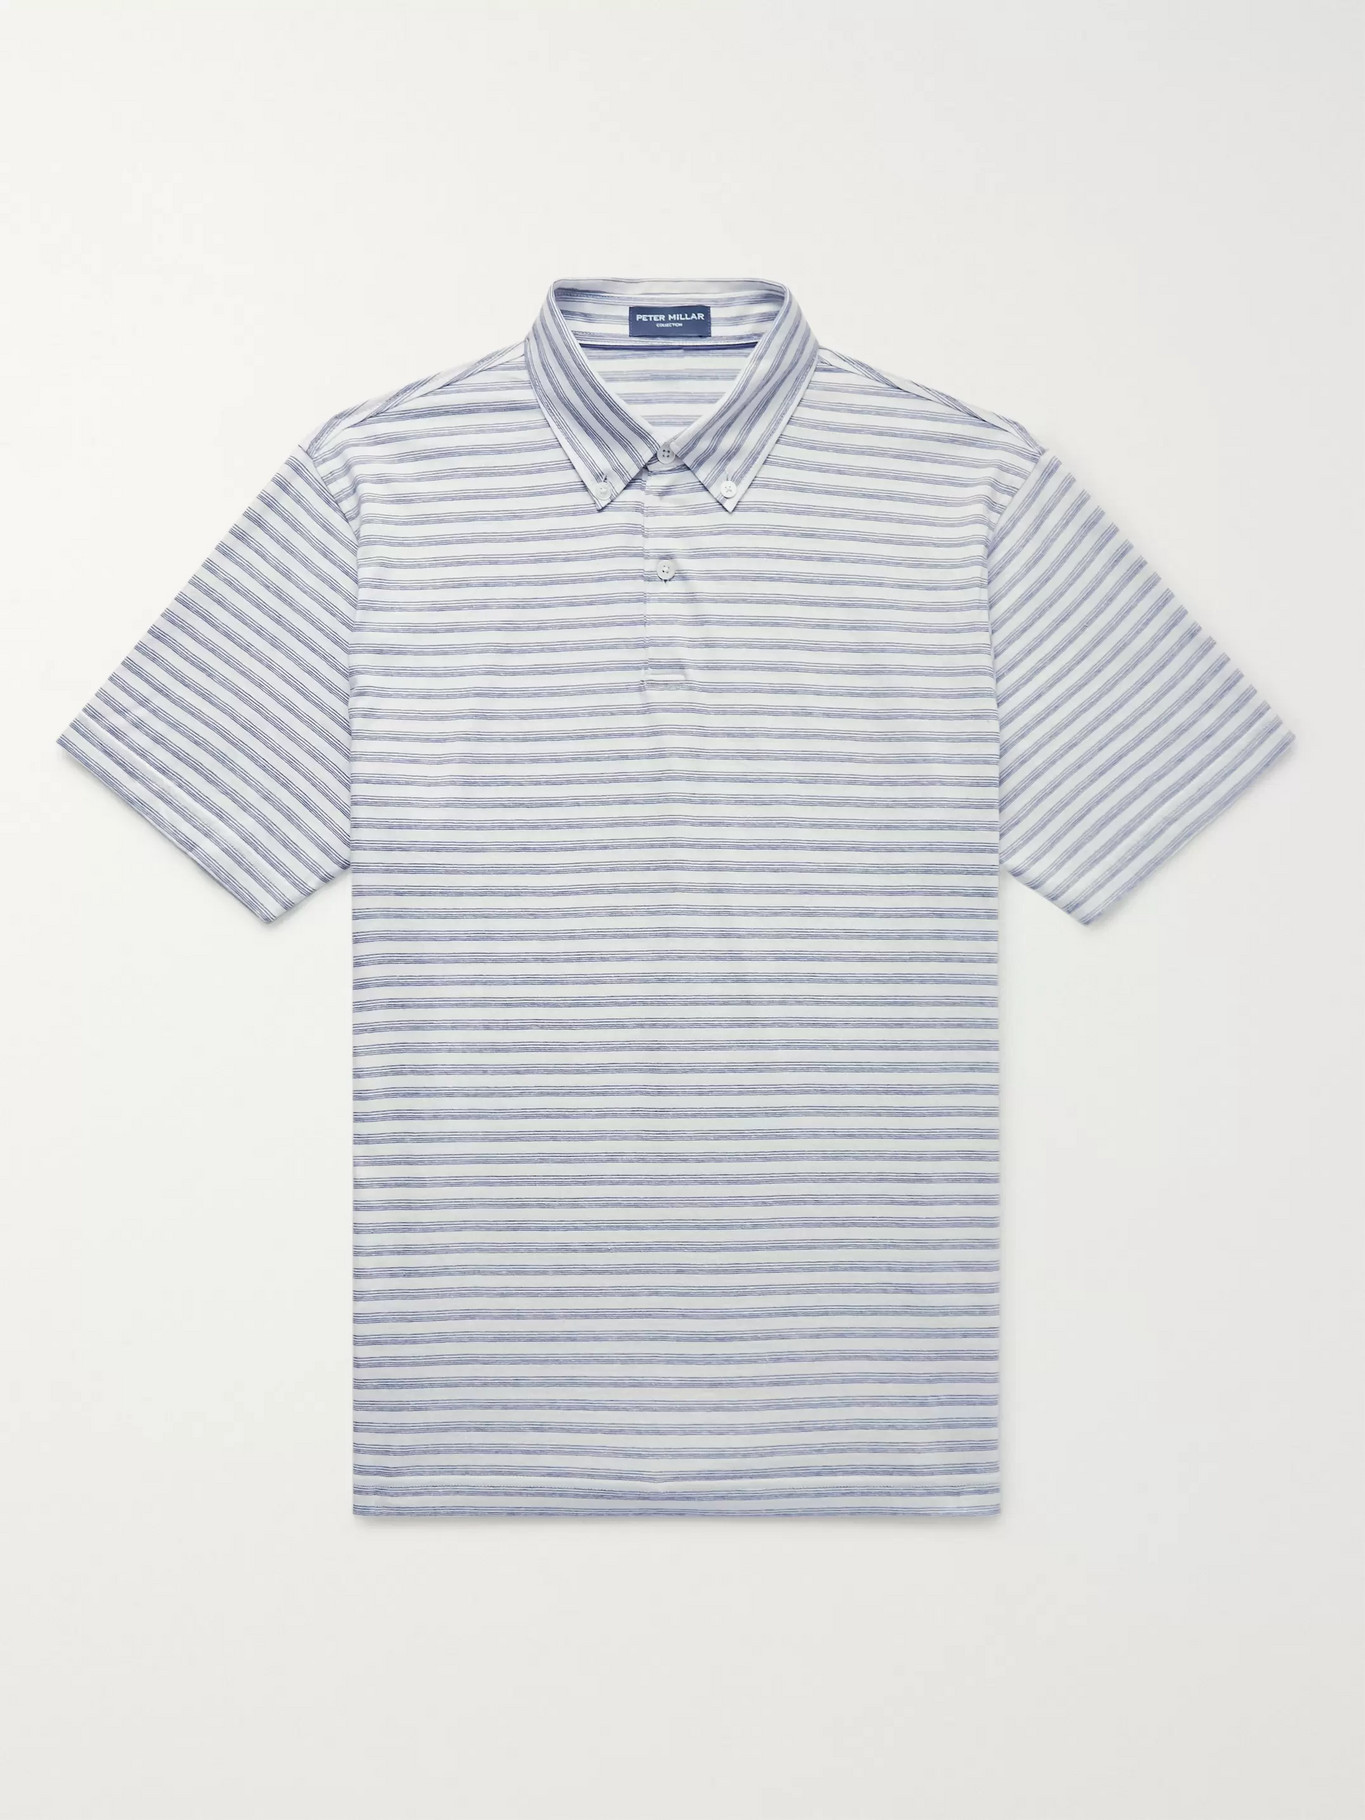 Peter Millar Golf Shirt Size Chart